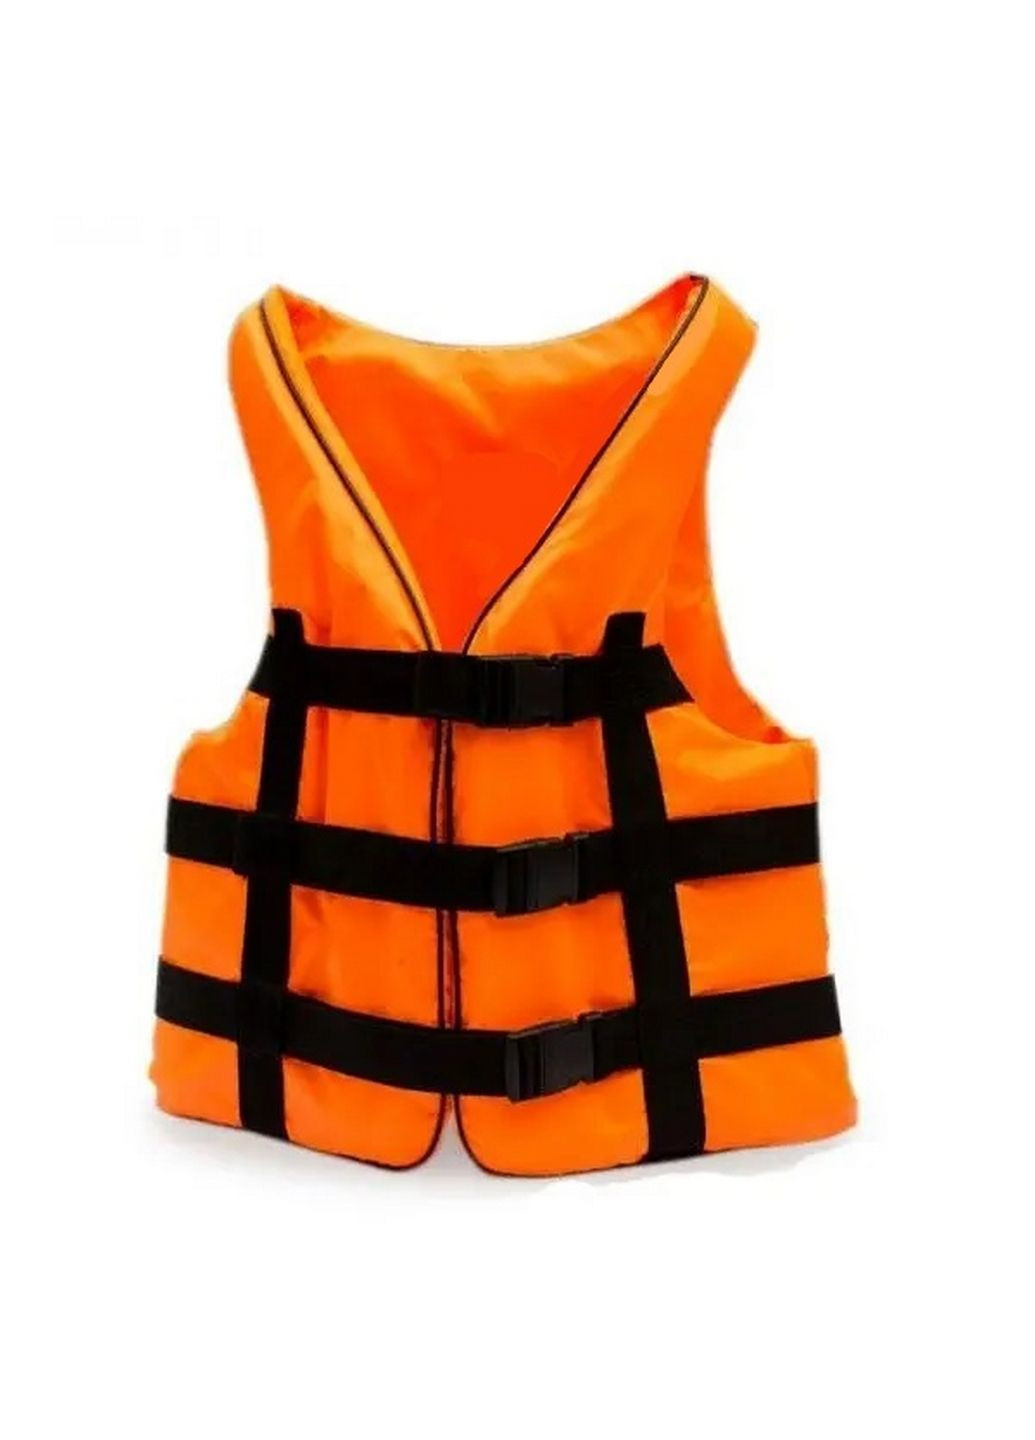 Спасательный жилет оранж 70-90 кг Ranger (292577285)